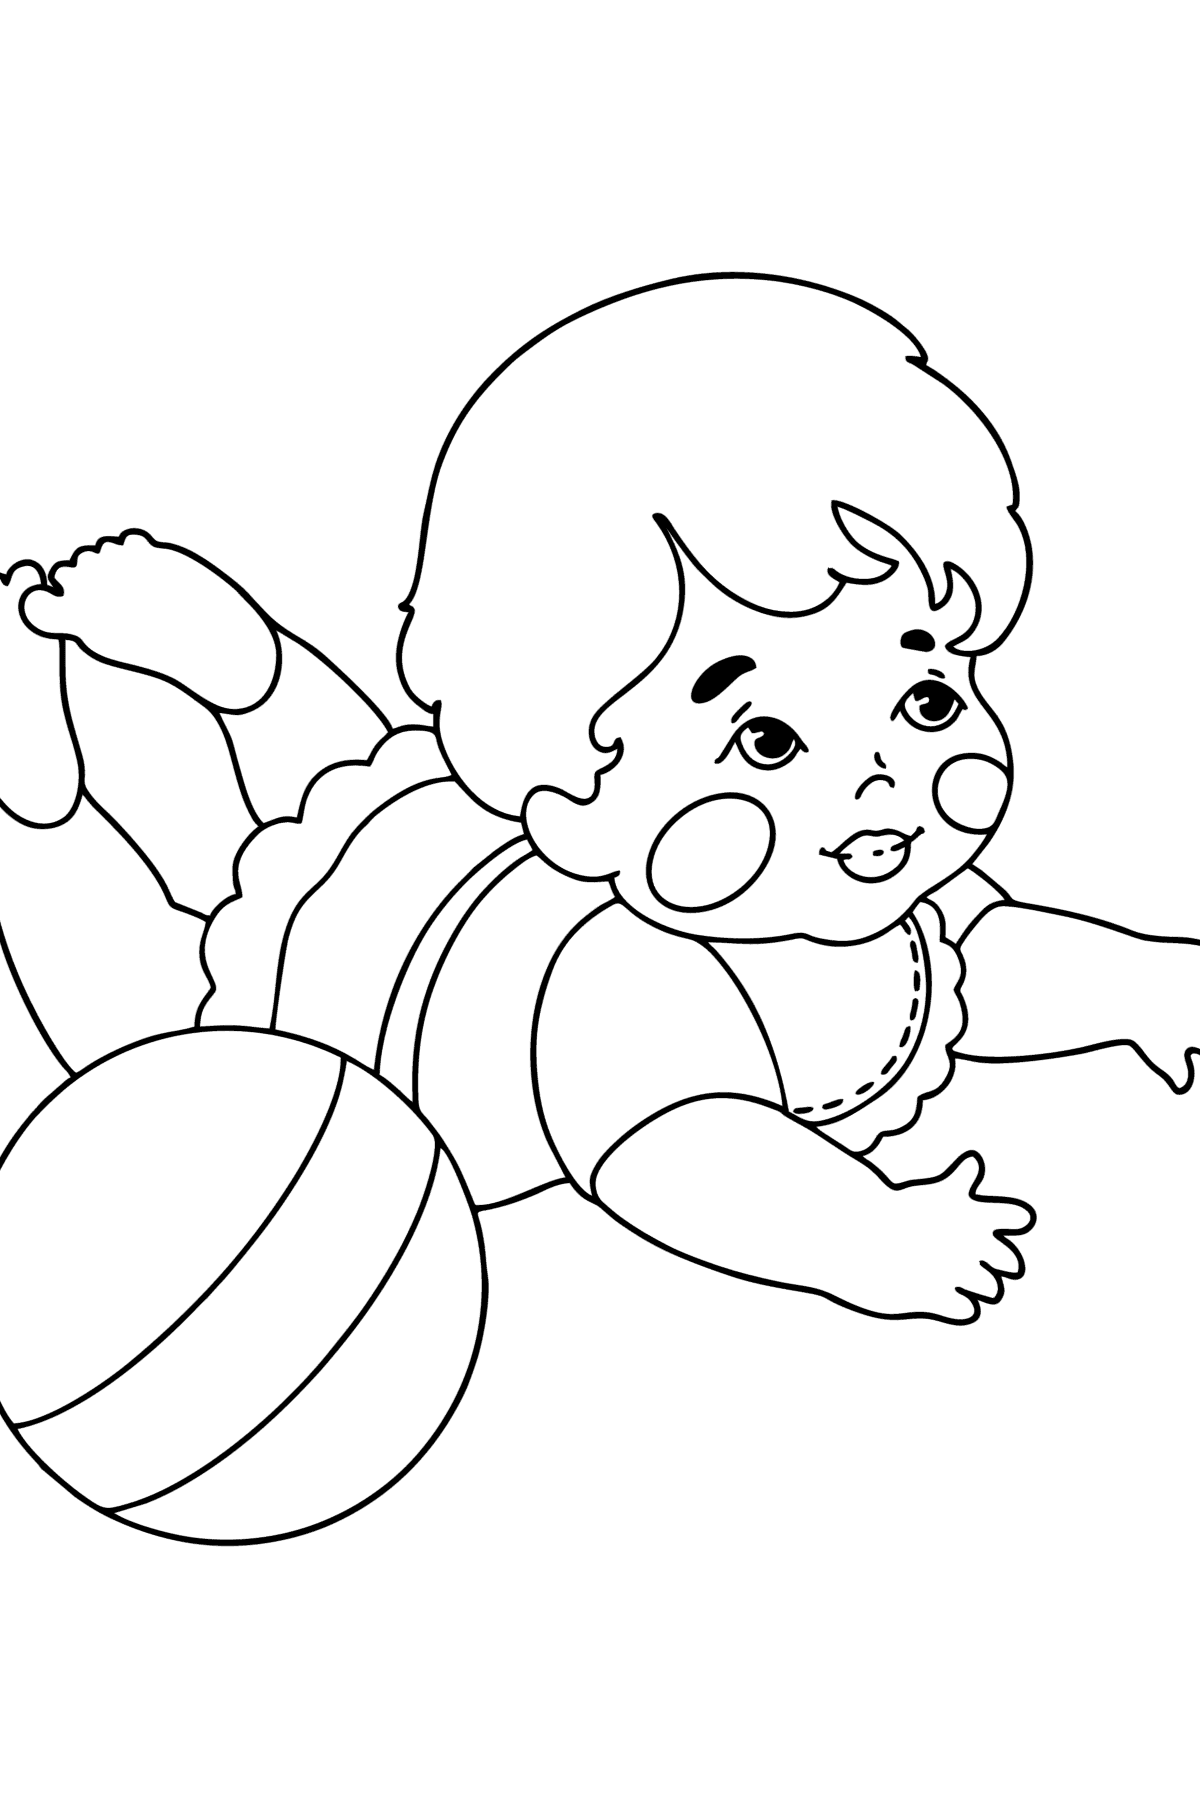 Раскраска Малышка с мячом - Картинки для Детей